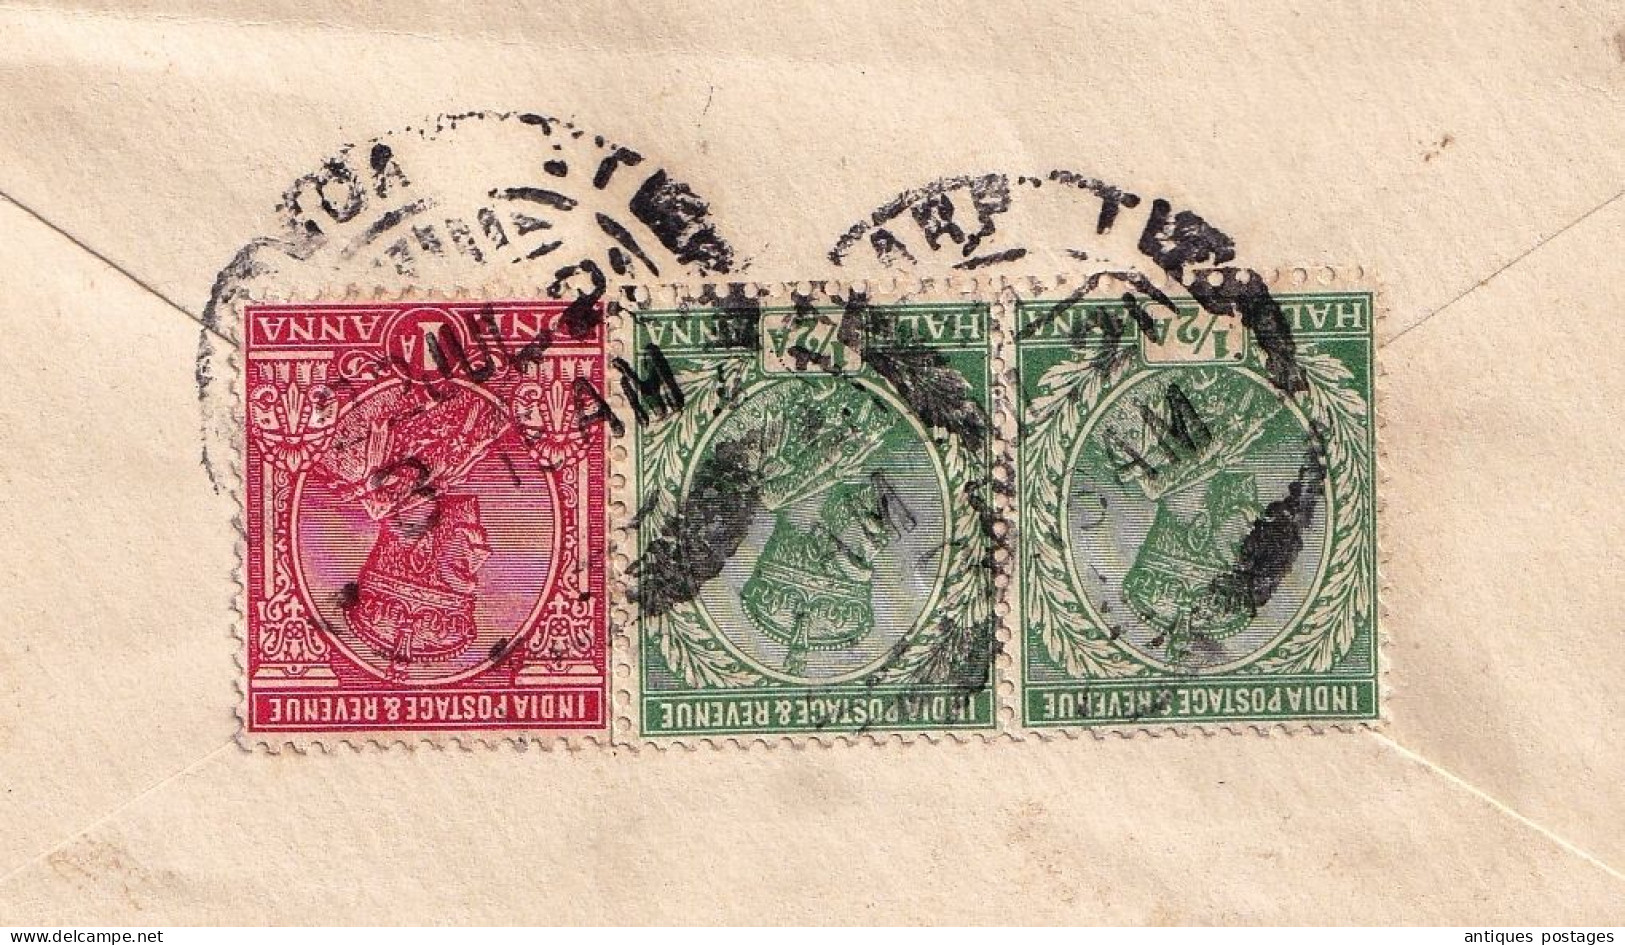 Lettre 1921 Postal Stationery Inde India Postage Half Anna La Chaux de Fonds Suisse Switzerland King George V